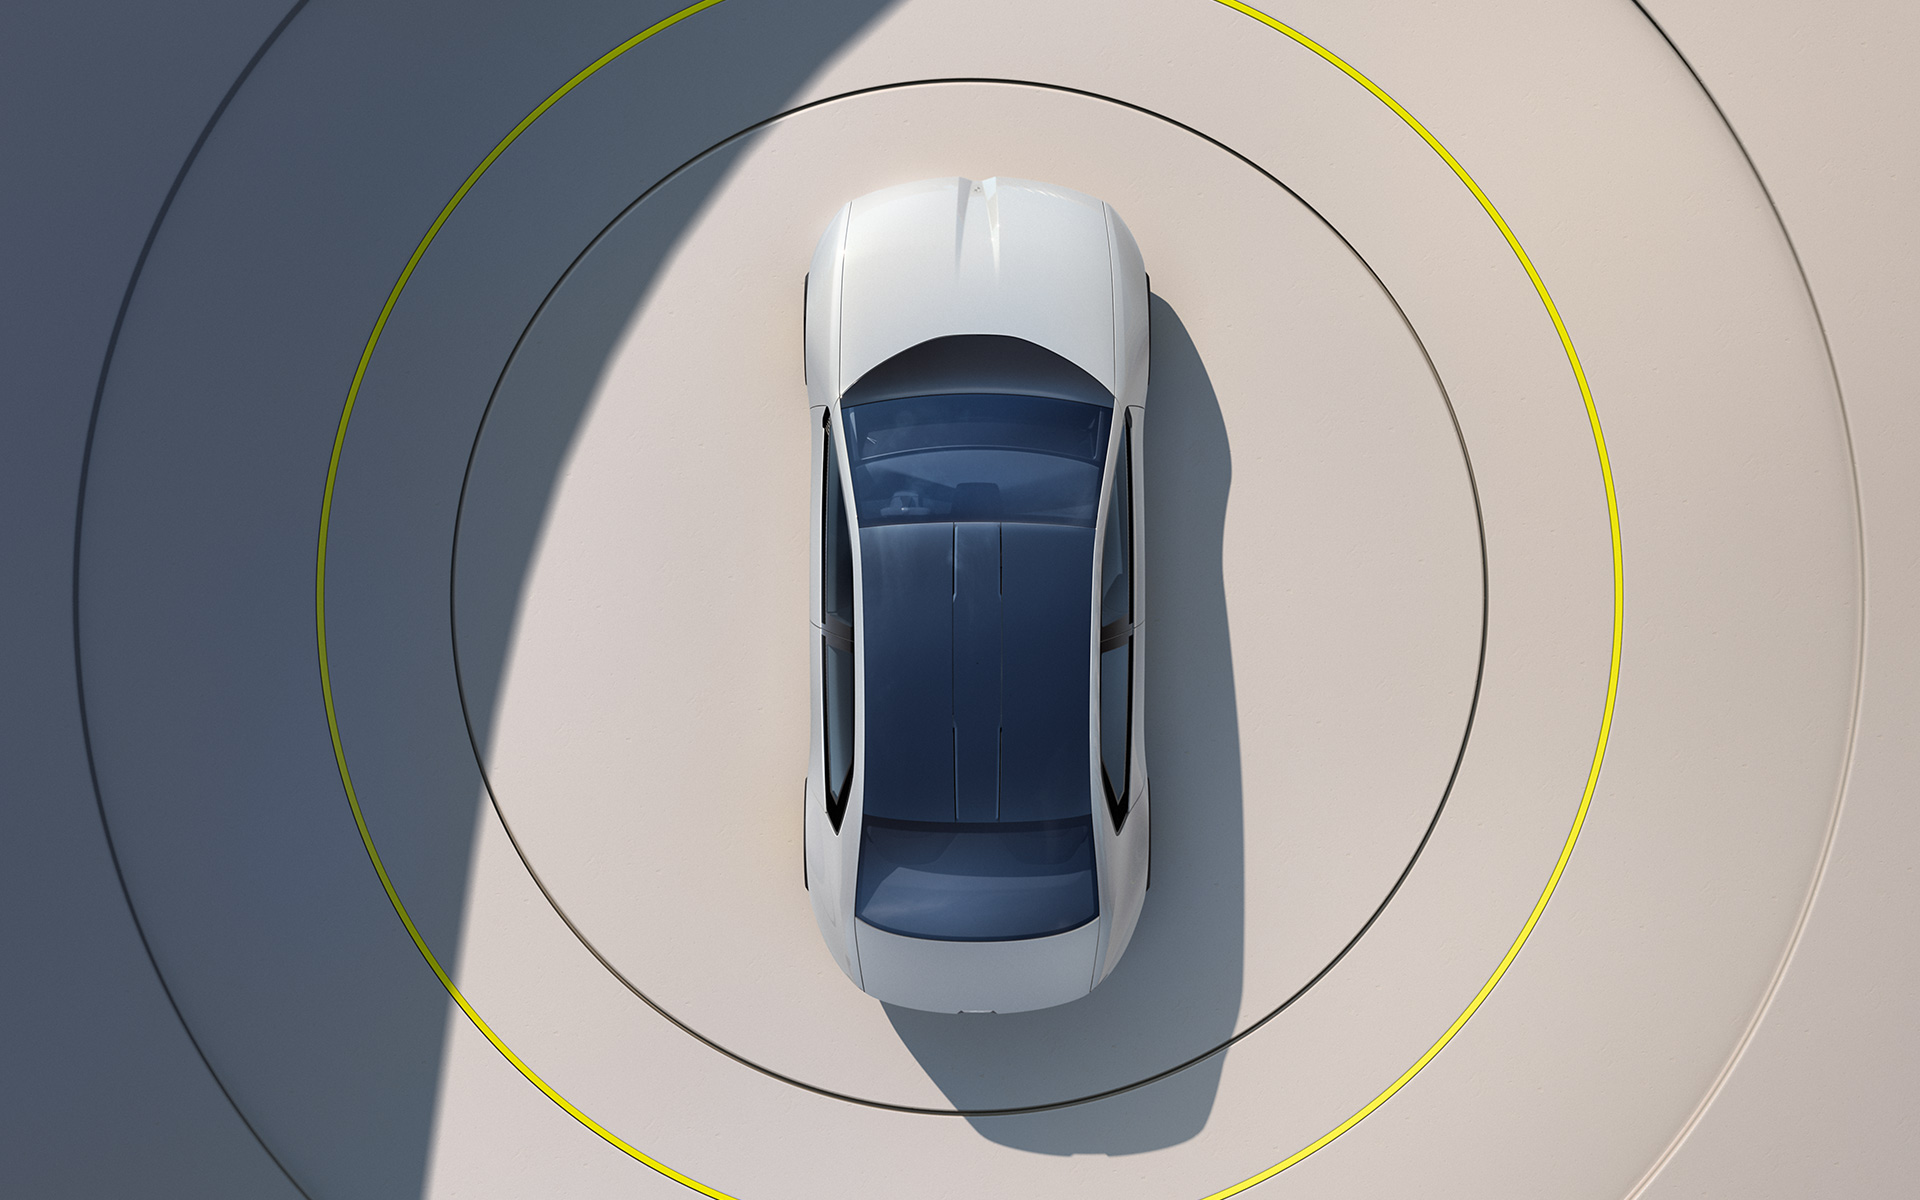 BMW i Vision Dee Vision vehicle exterior design topshot